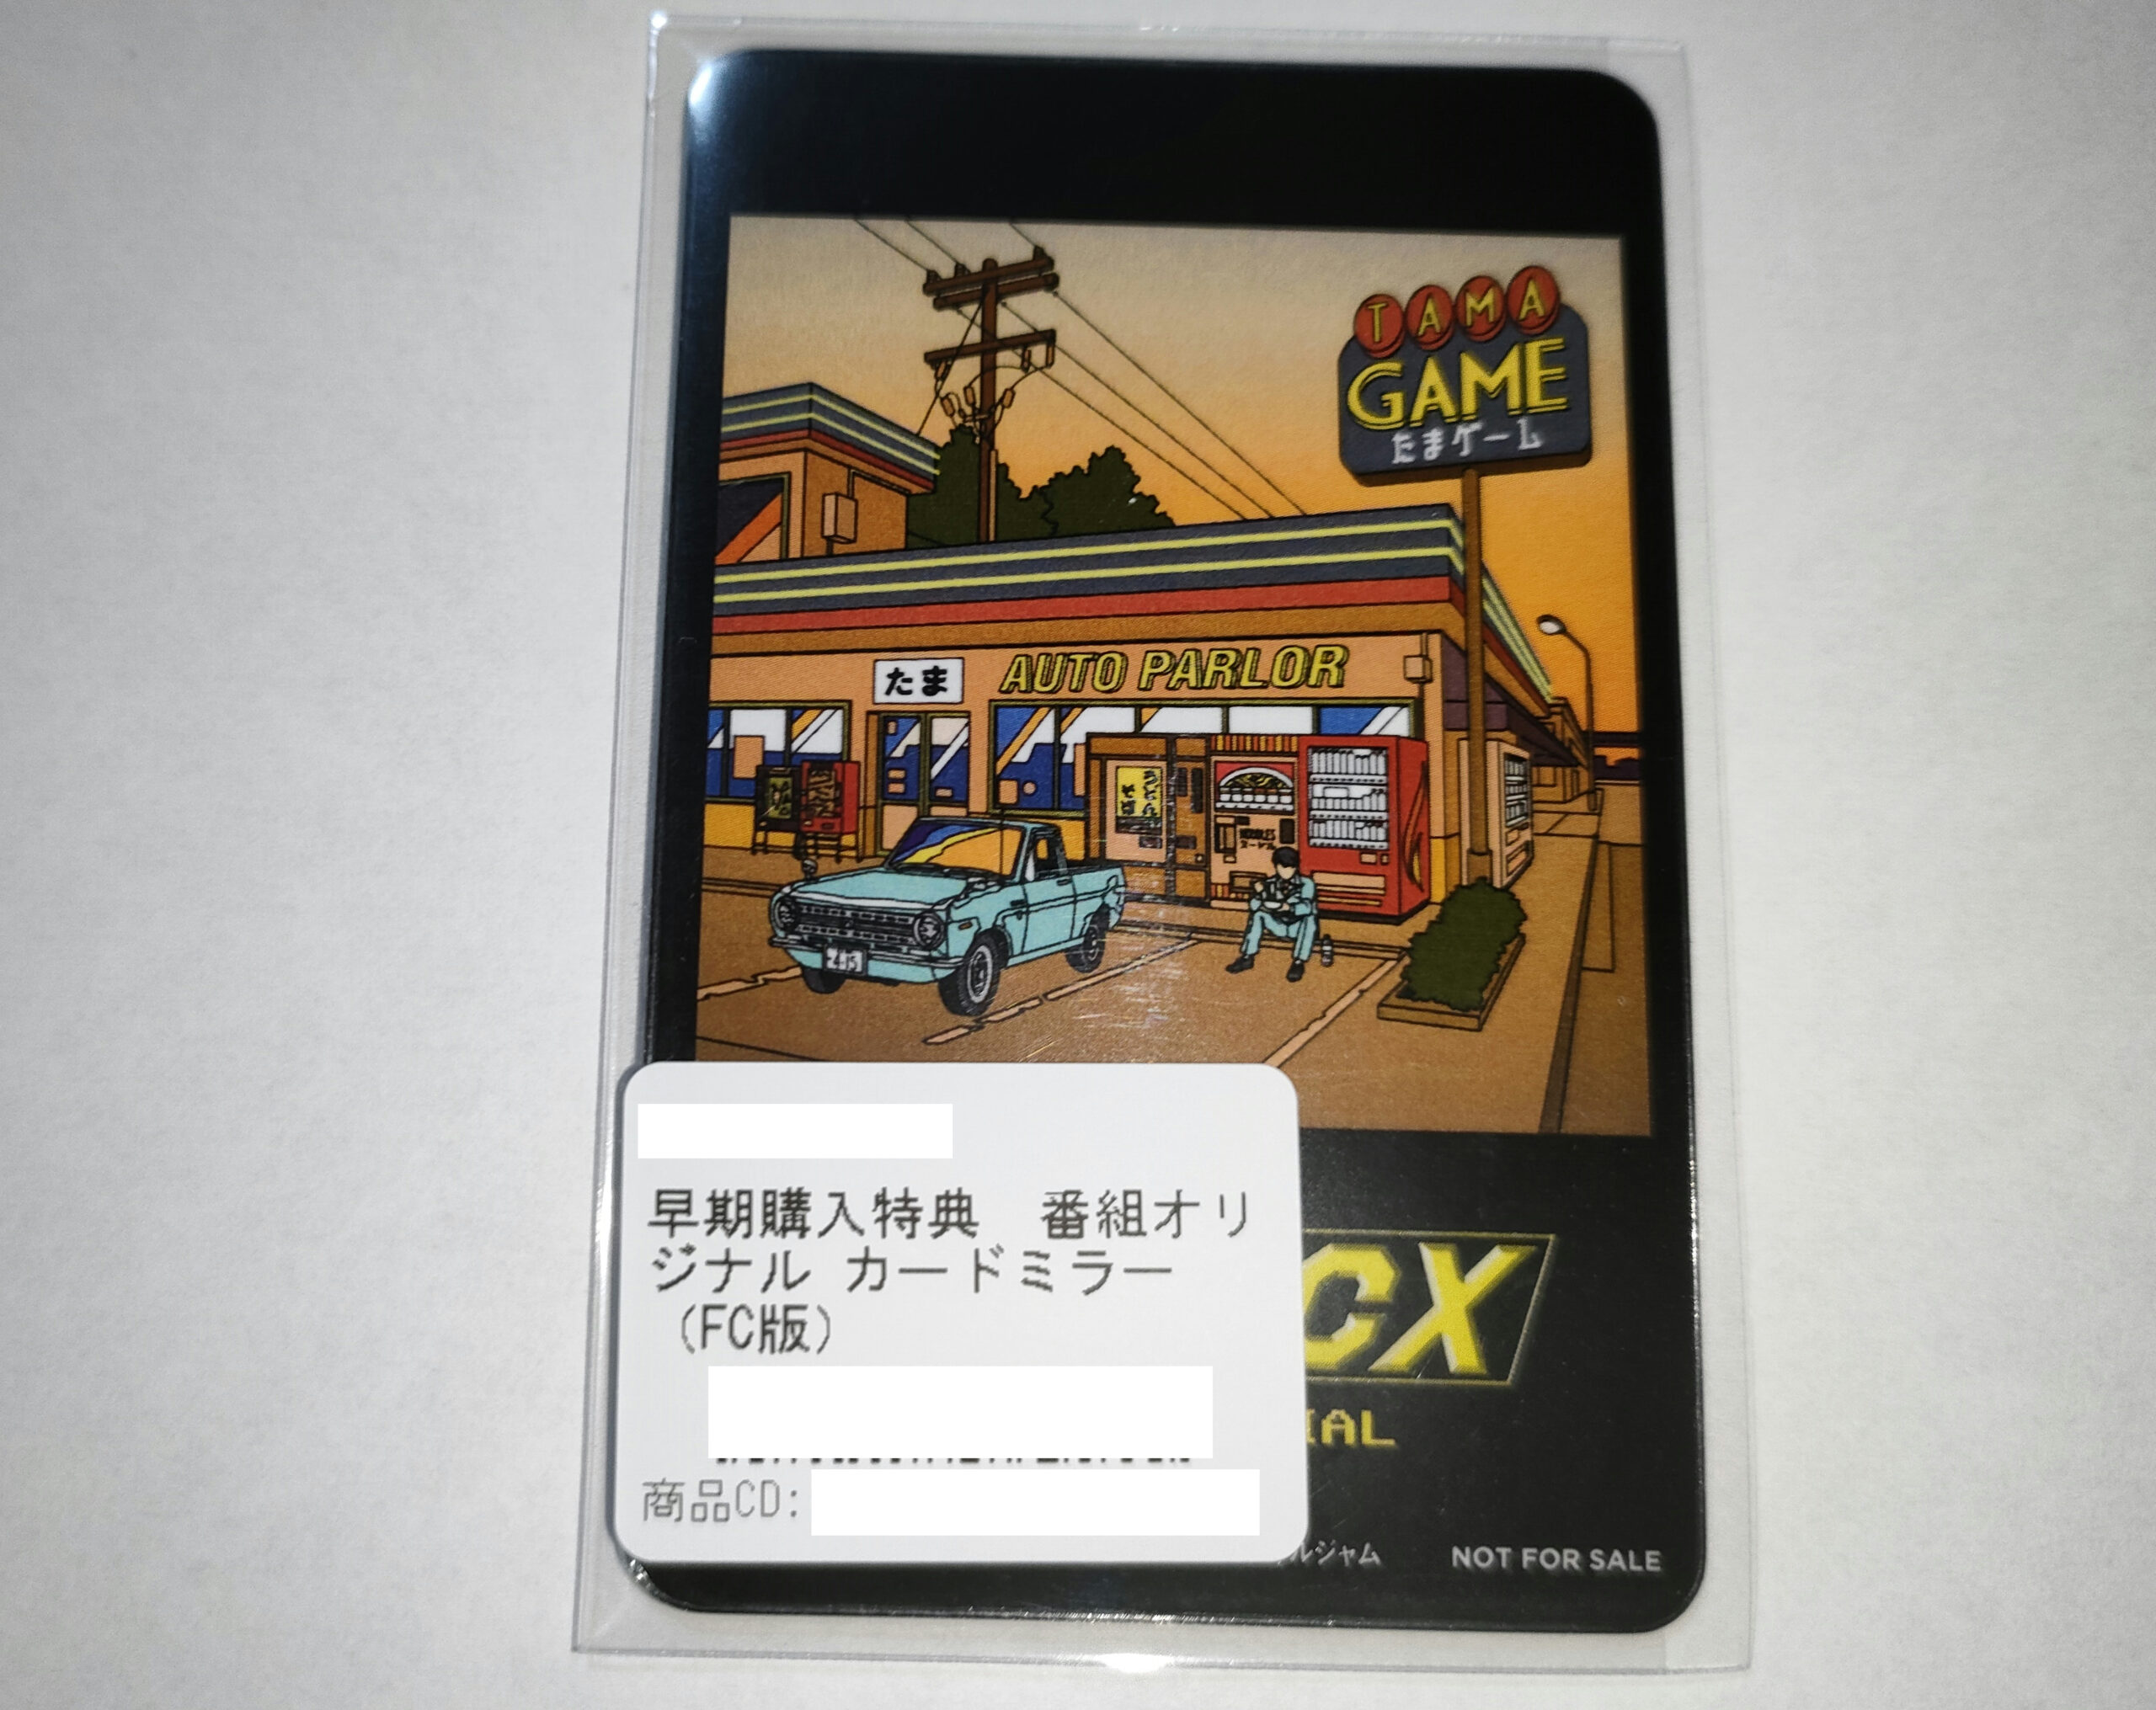 ゲームセンターCX たまゲー スペシャル』が9月2日から発売開始 